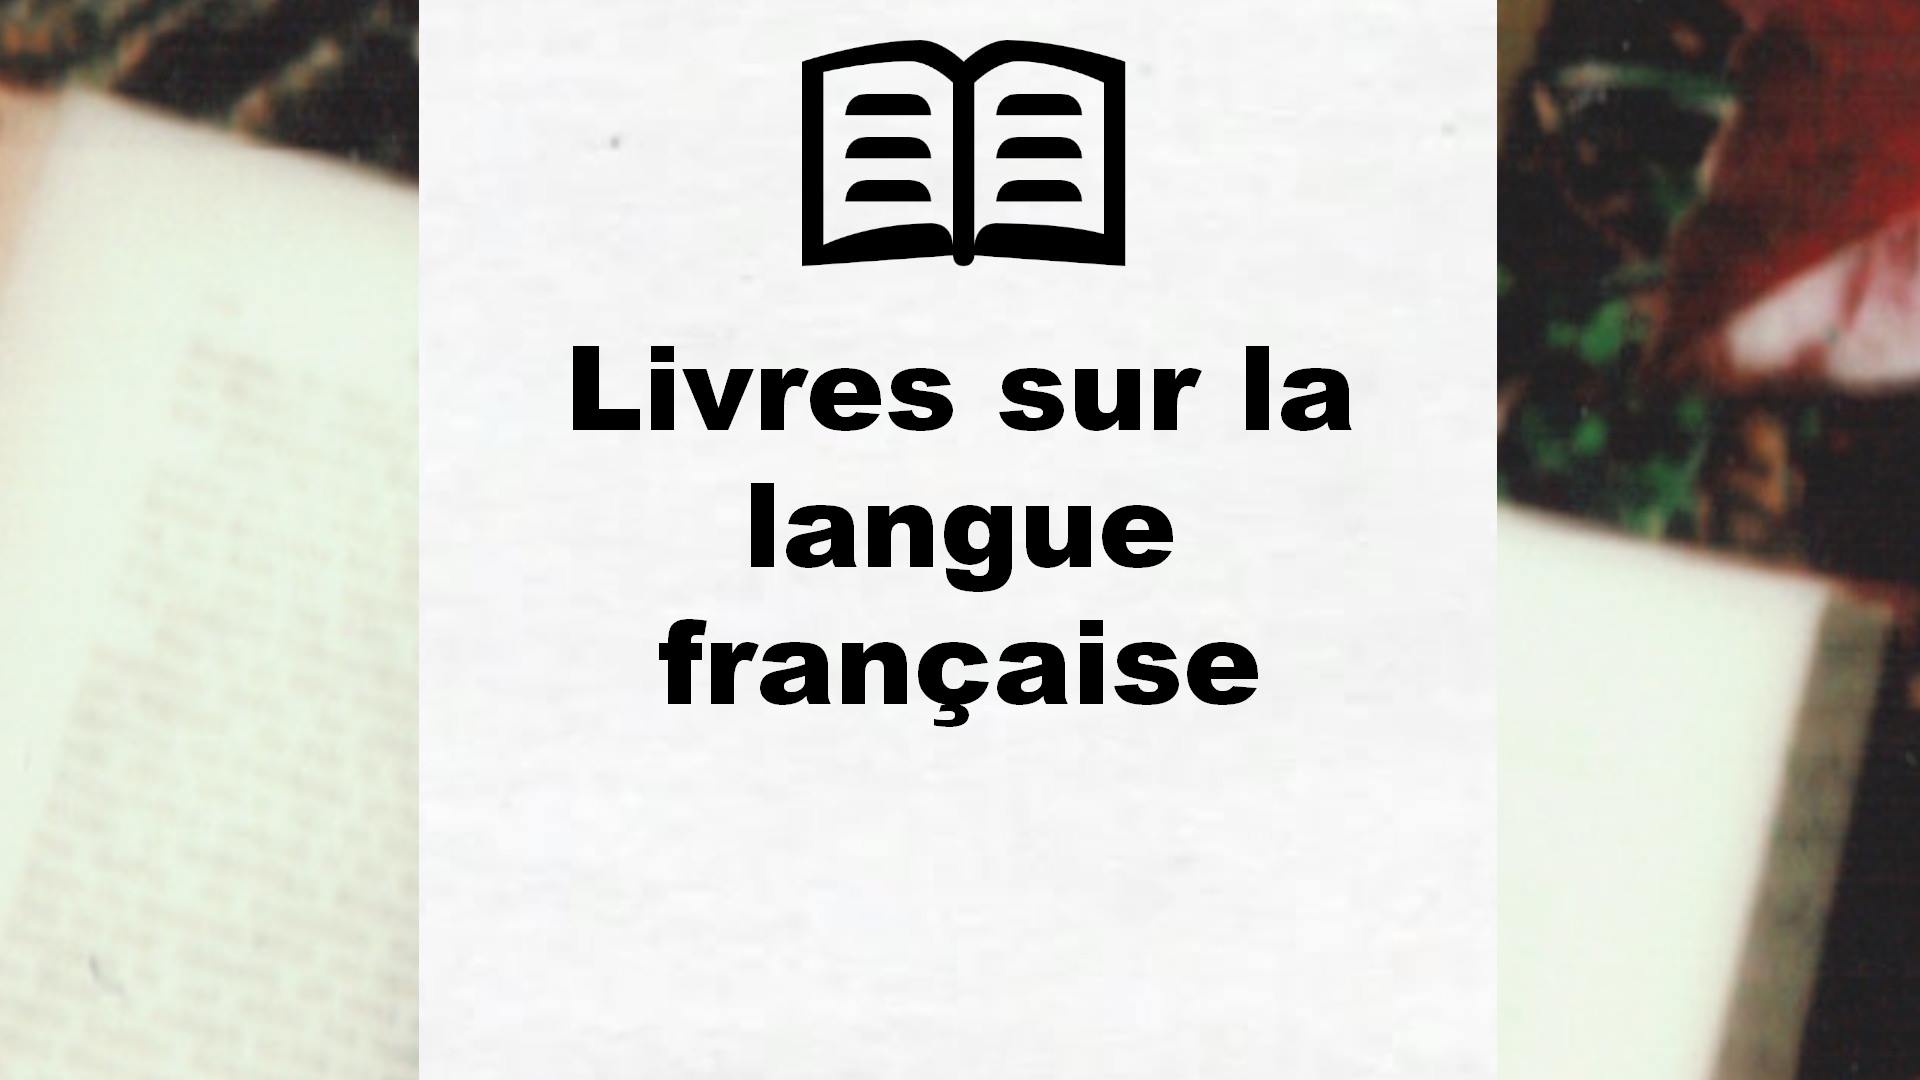 Livres sur la langue française